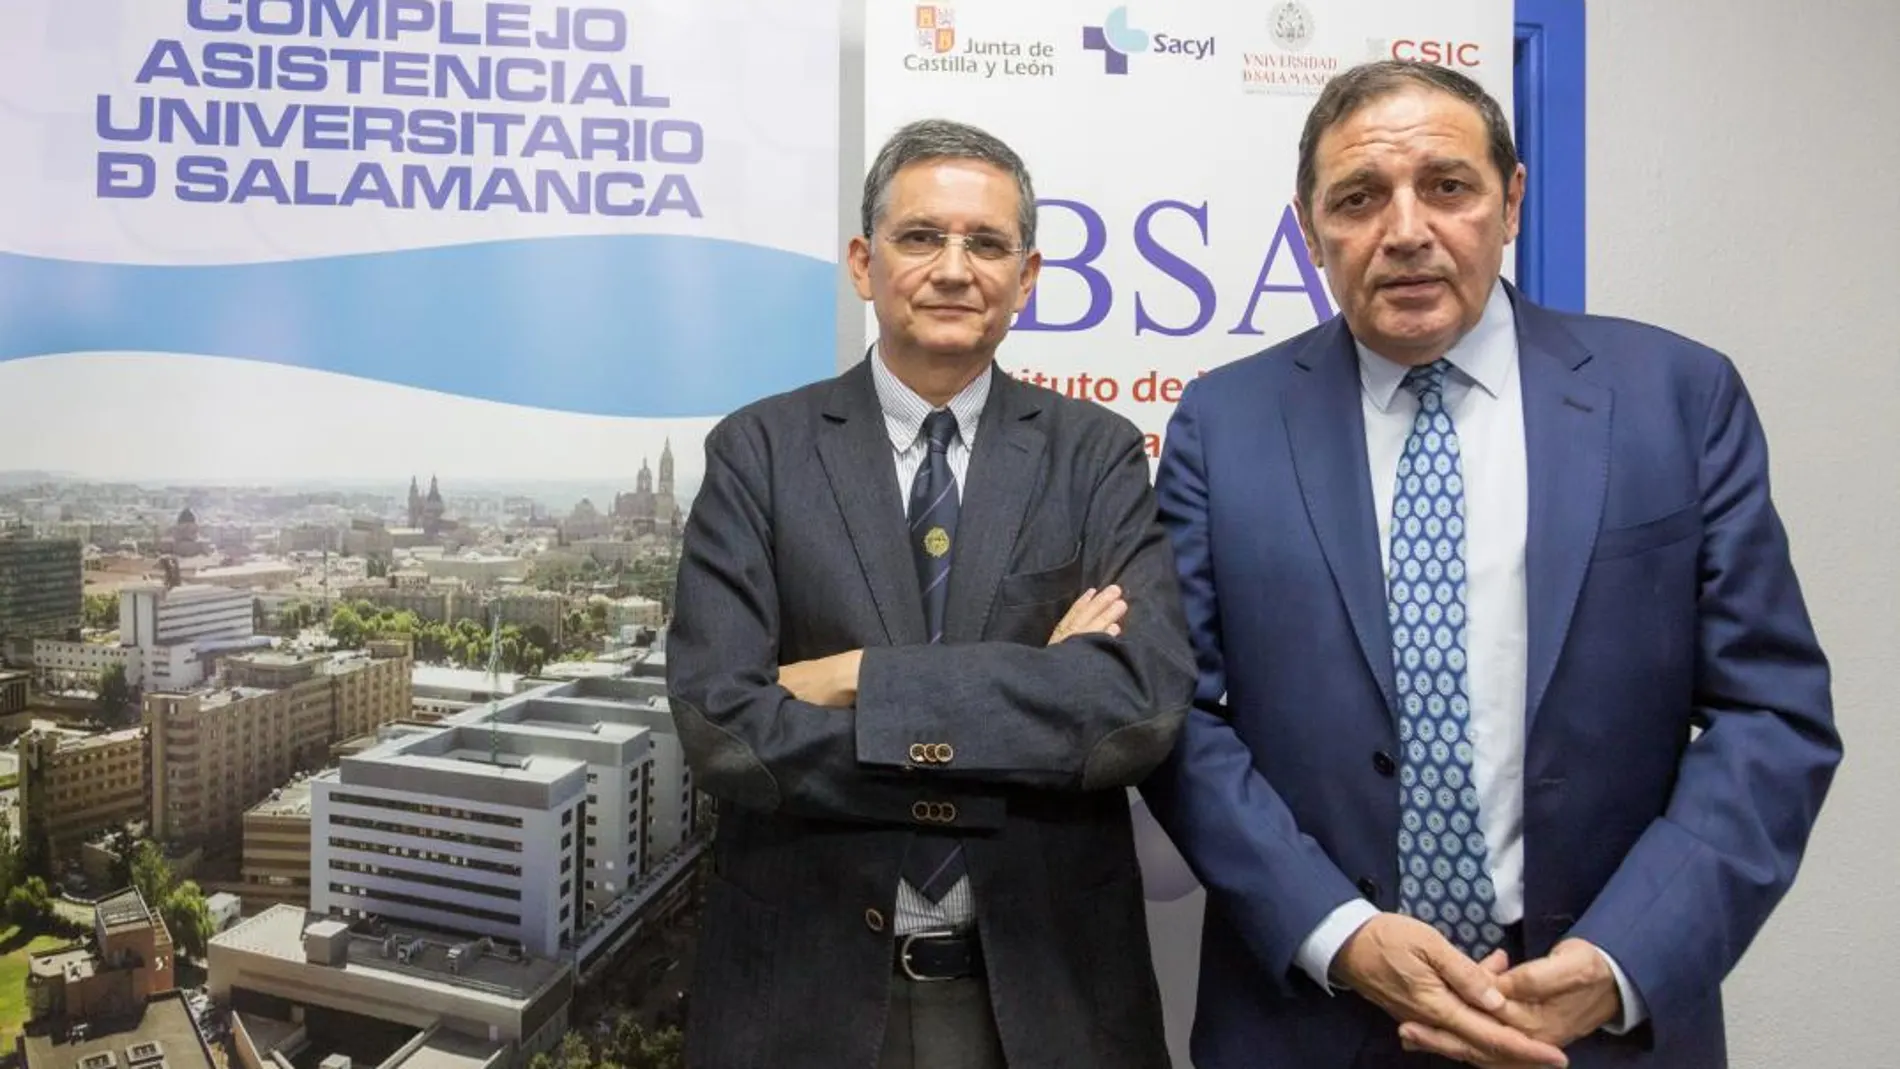 El consejero de Sanidad, Antonio Sáez Aguado, junto al director del Ibsal, Rogelio González Sarmiento